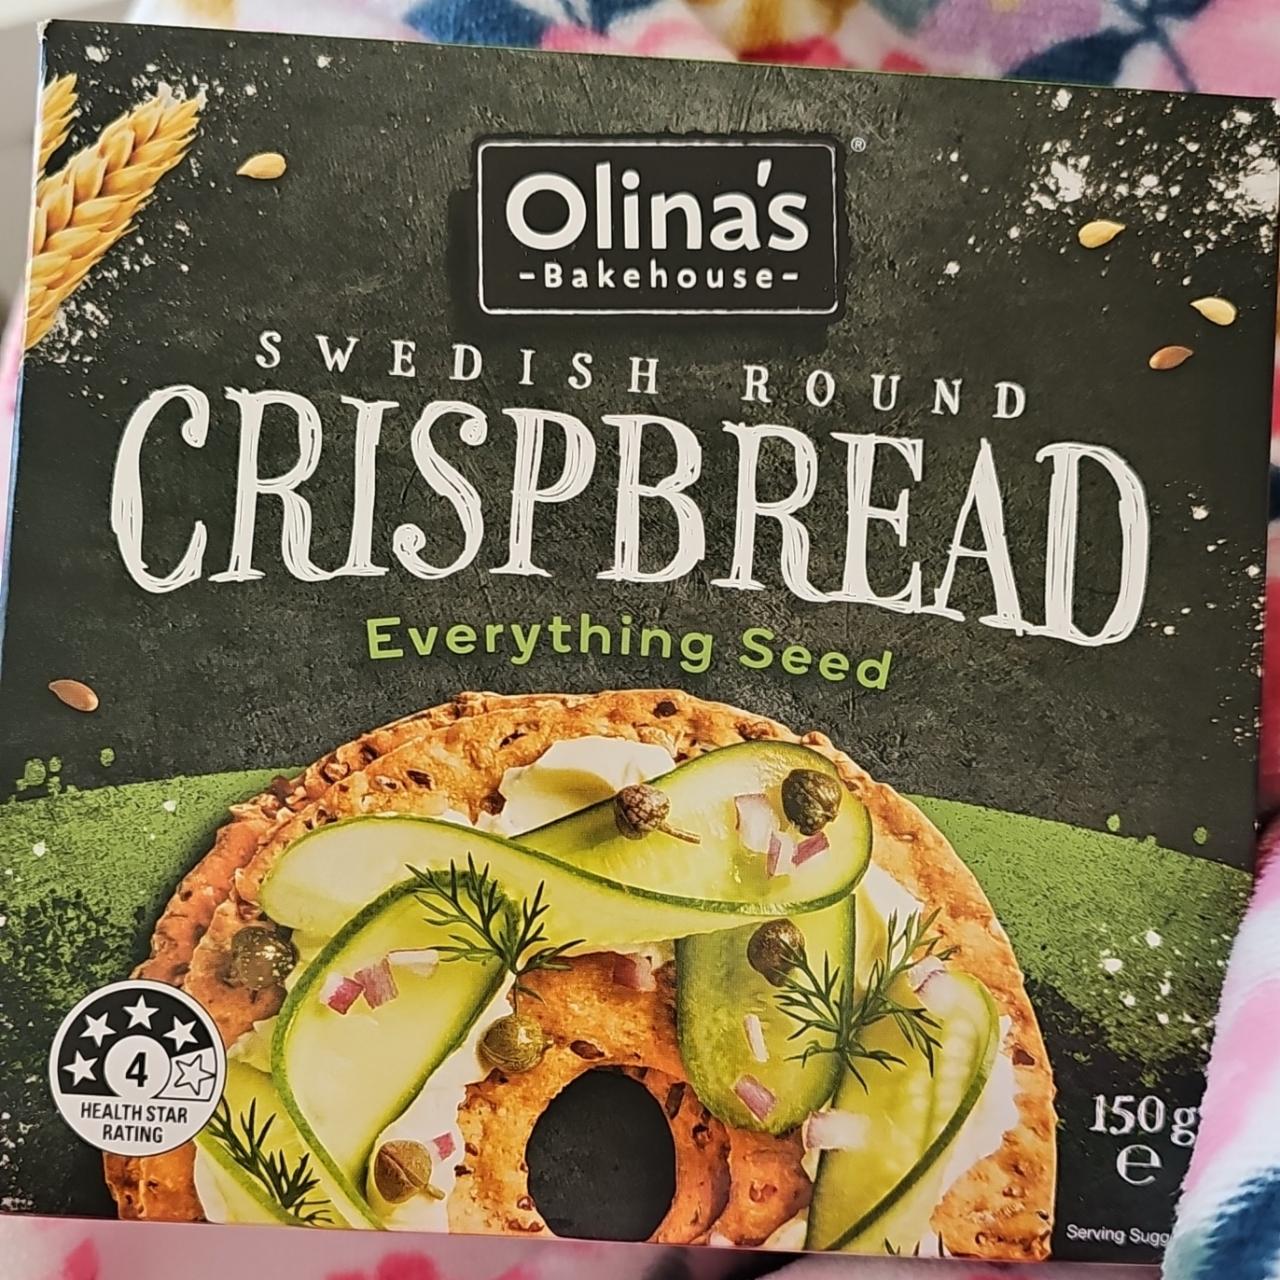 Fotografie - Swedish round Crispbread Everything seed Olina's Bakehouse